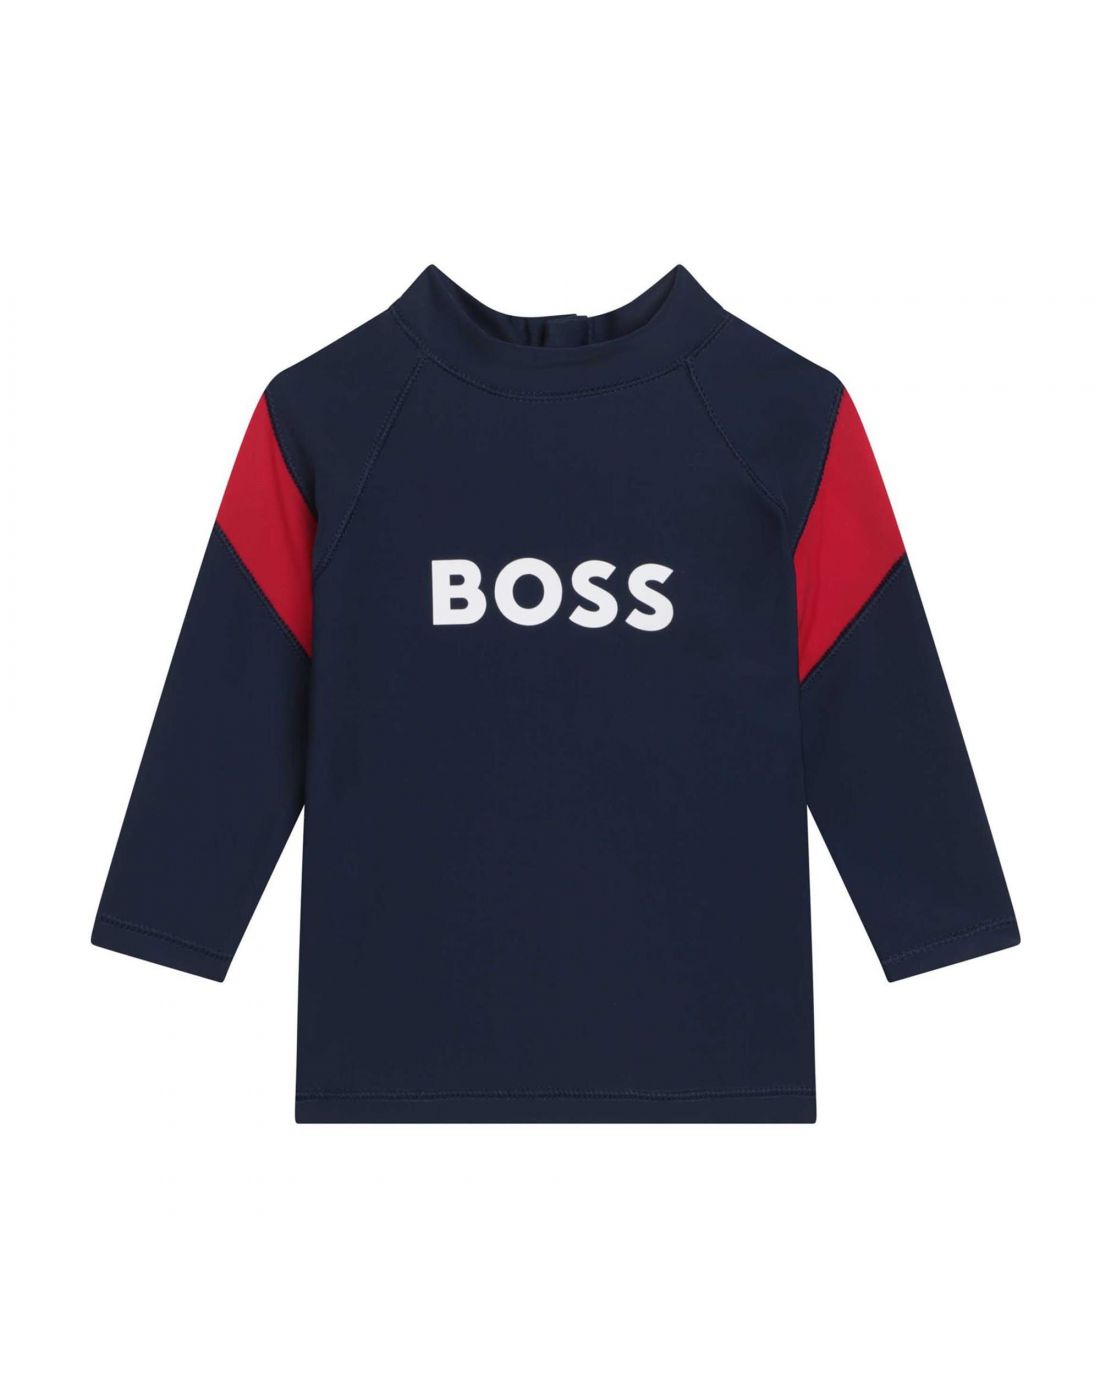 Hugo Boss Boys ANTI-UV Swimming T-Shirt